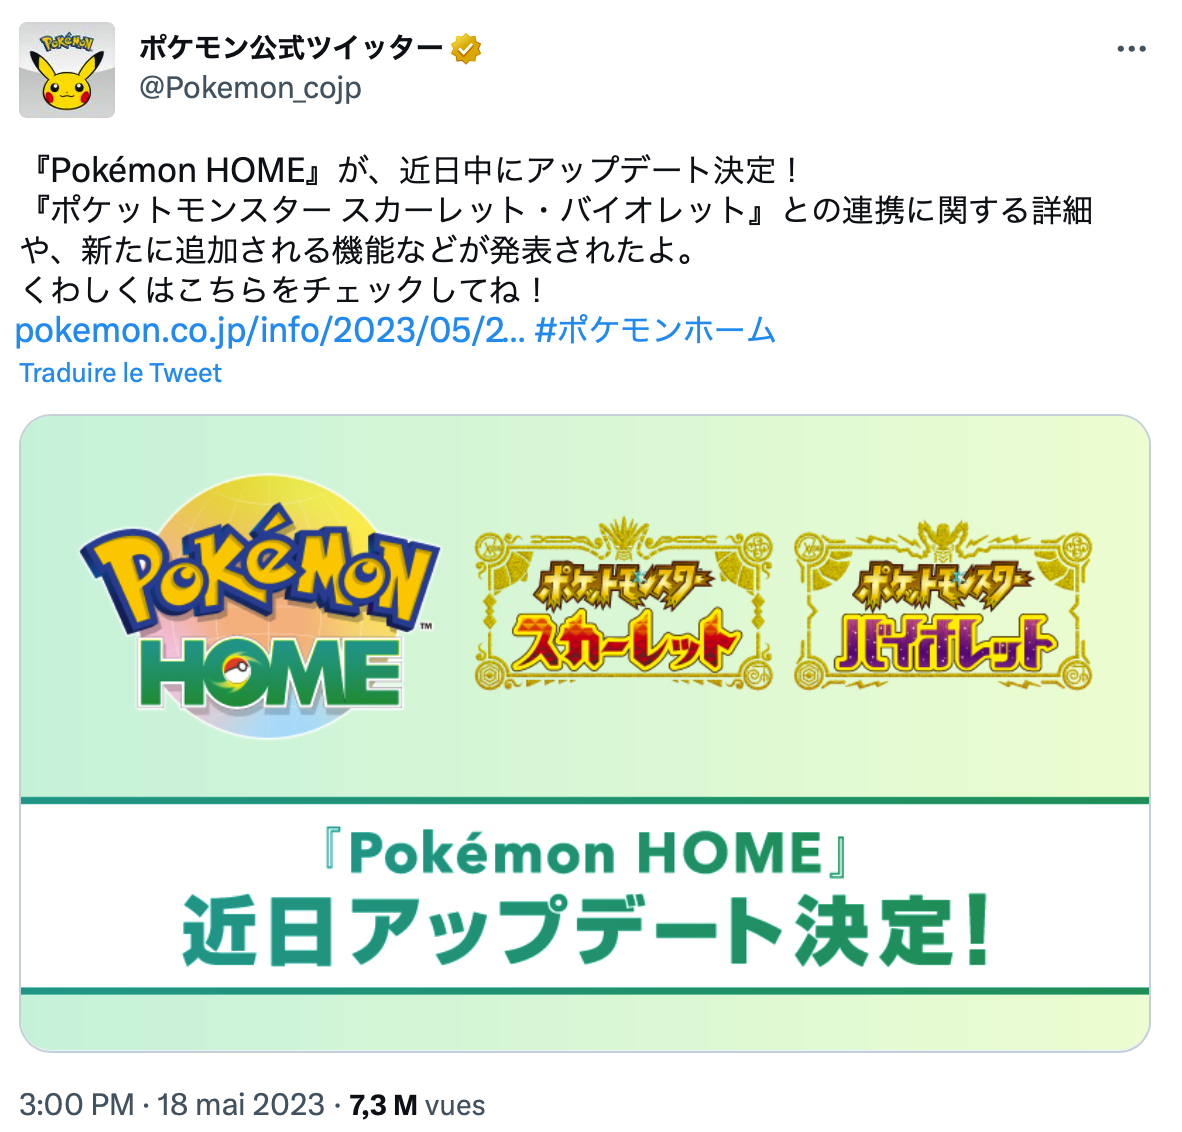 Annonce japonaise du Pokémon Home